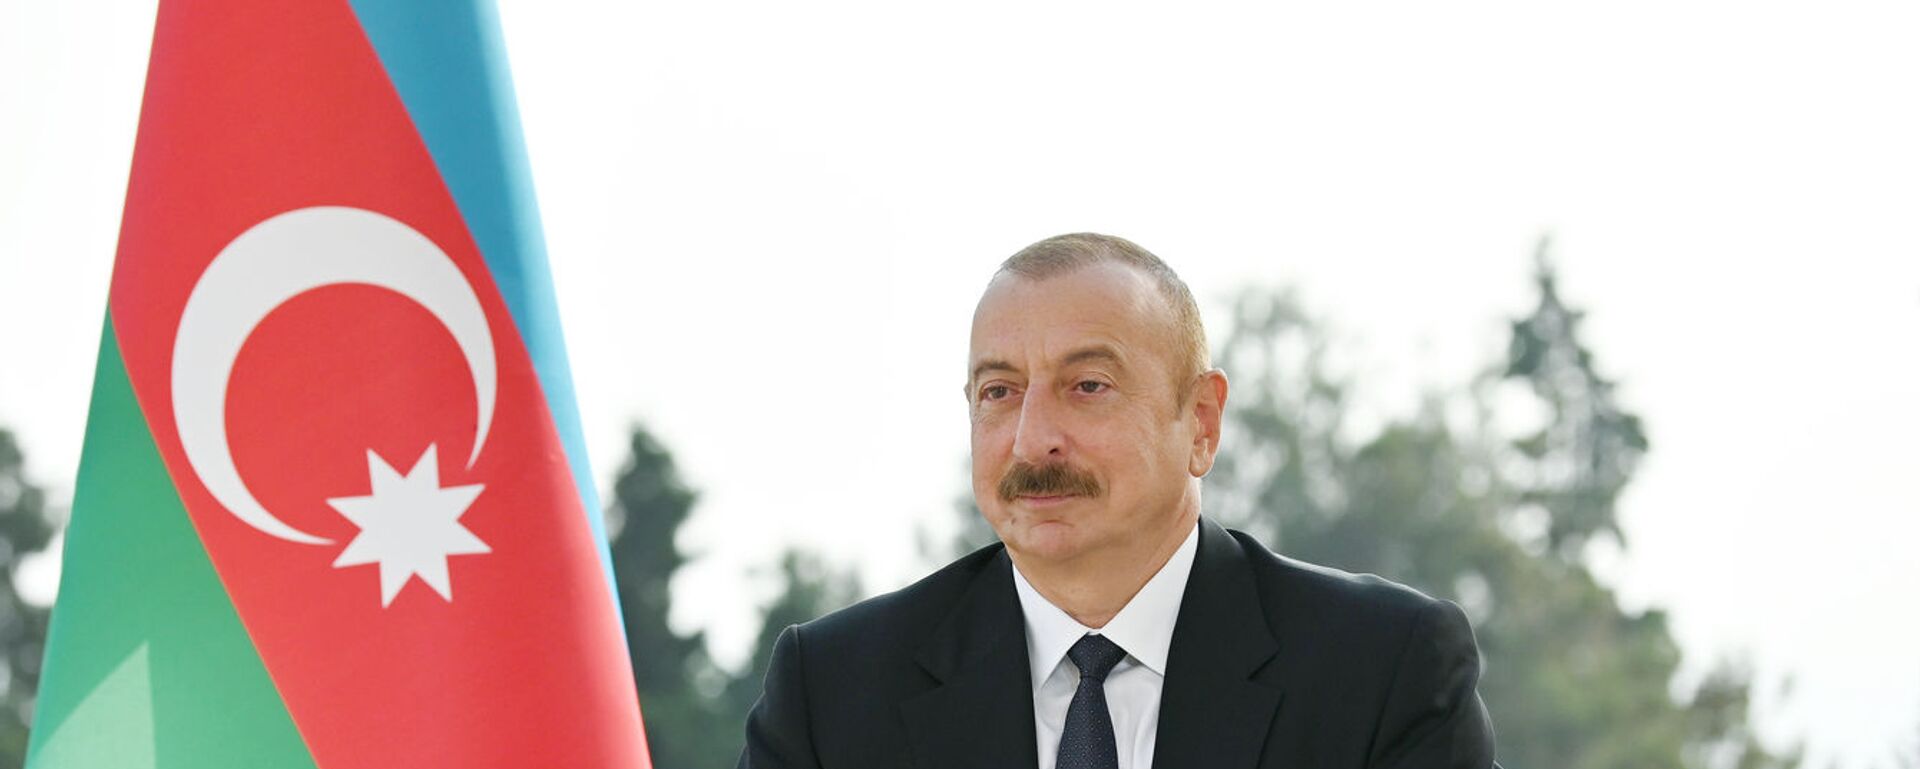 Президент Азербайджана Ильхам Алиев - Sputnik Азербайджан, 1920, 24.10.2020